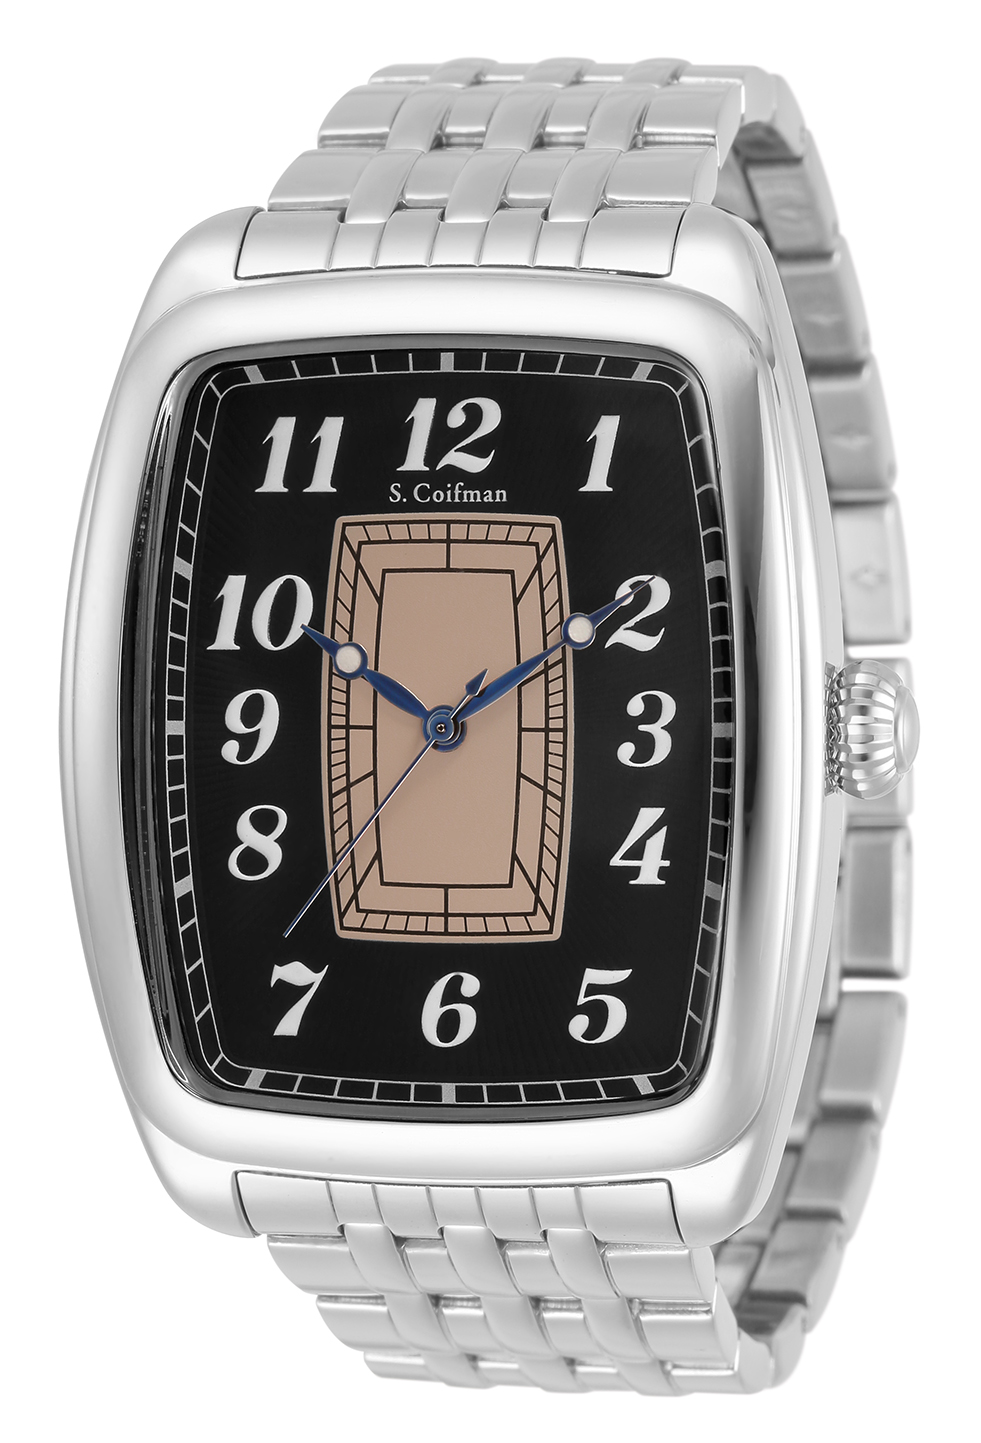 S. Coifman Men's Bracelet Men's Watch - 42mm, Steel (SC0449)